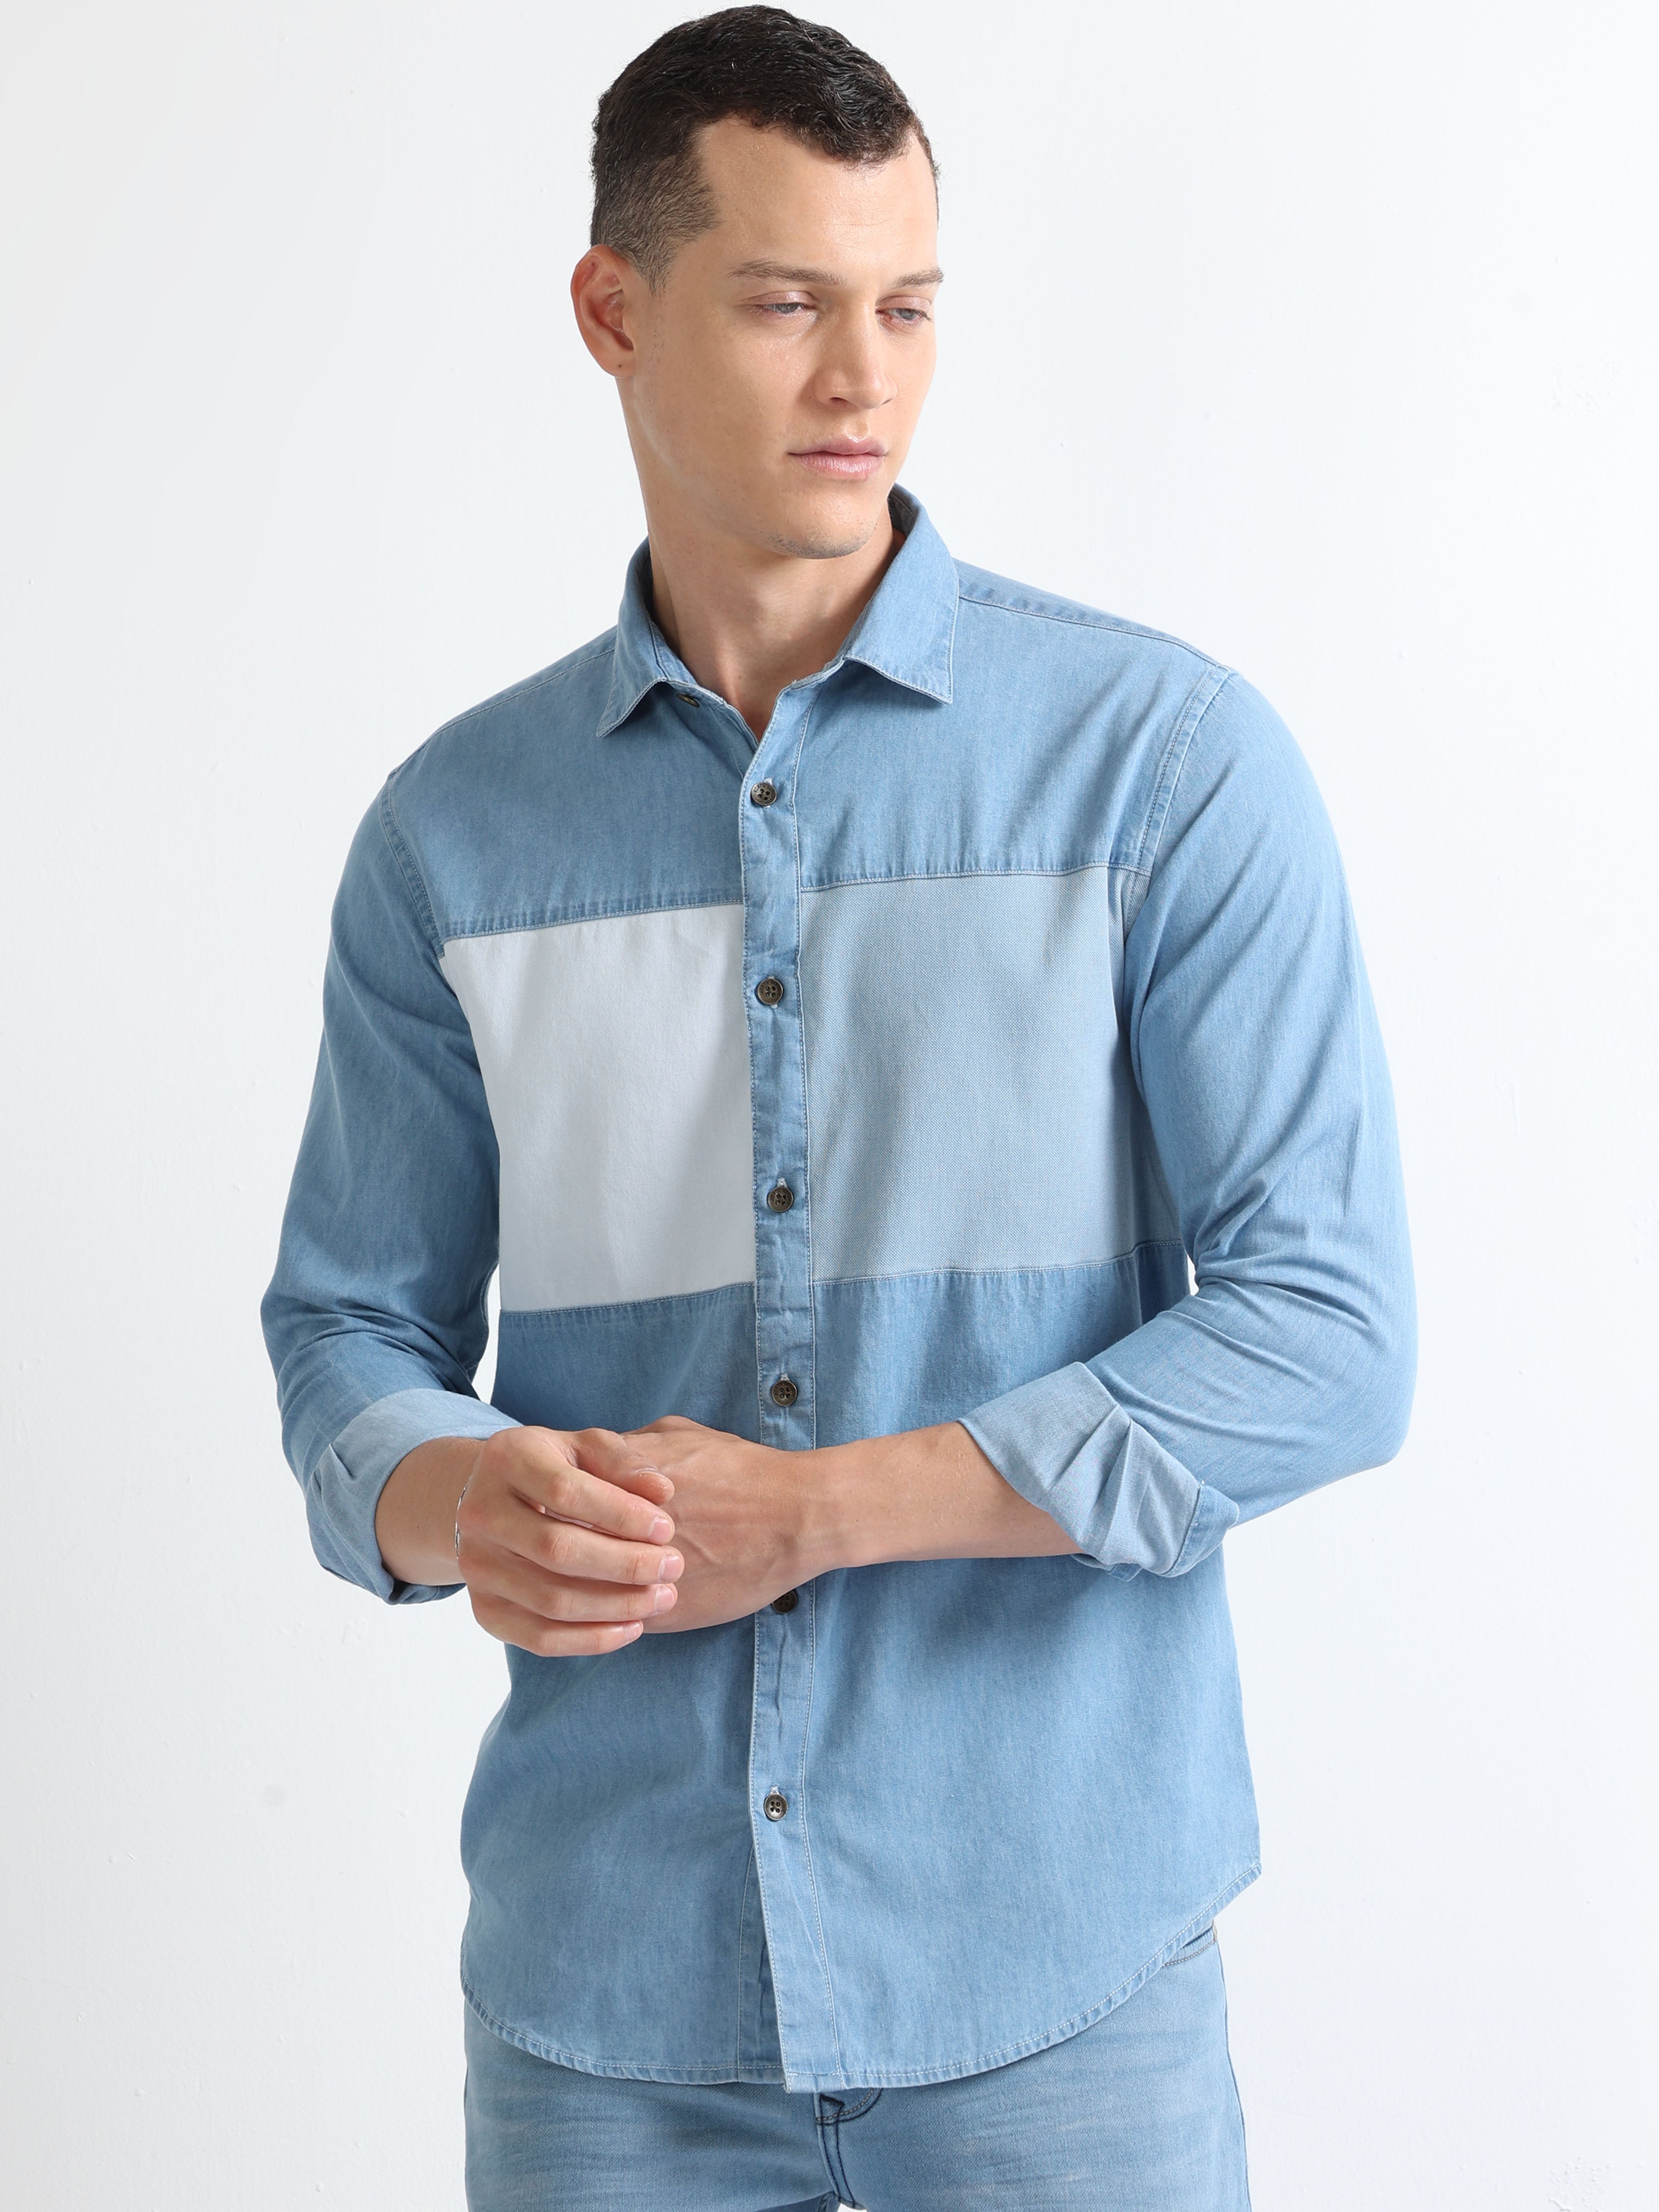 Hemp Denim|men's Slim Fit Cotton Denim Shirt - Solid Color, Long Sleeve,  Button-down